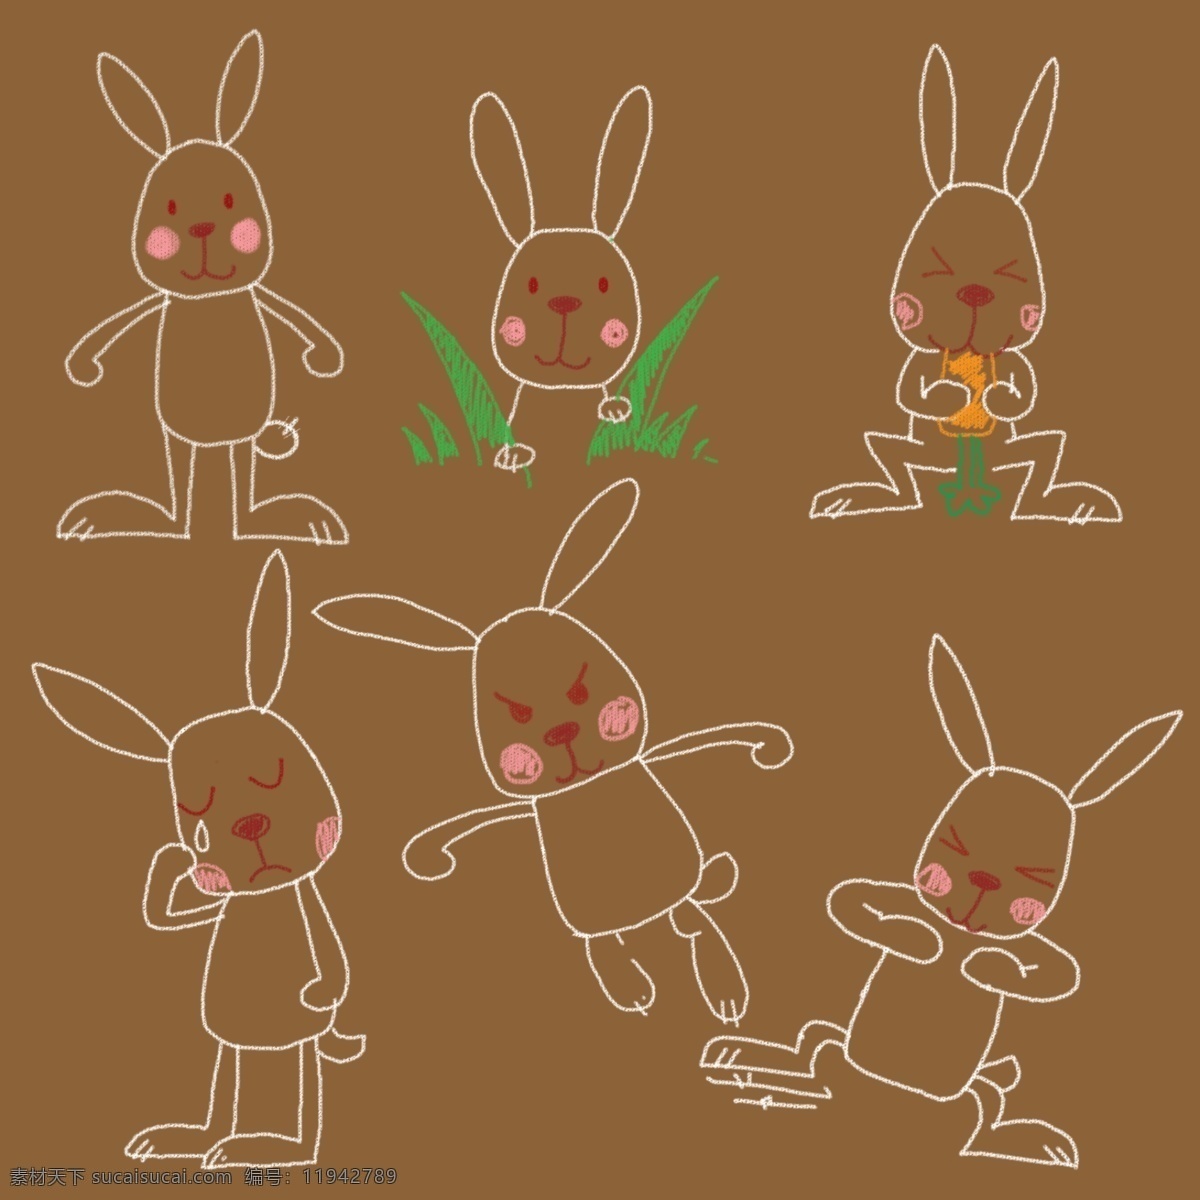 手绘卡通兔子 手绘 粉笔画 兔子 卡通 可爱 插画 动物 源文件